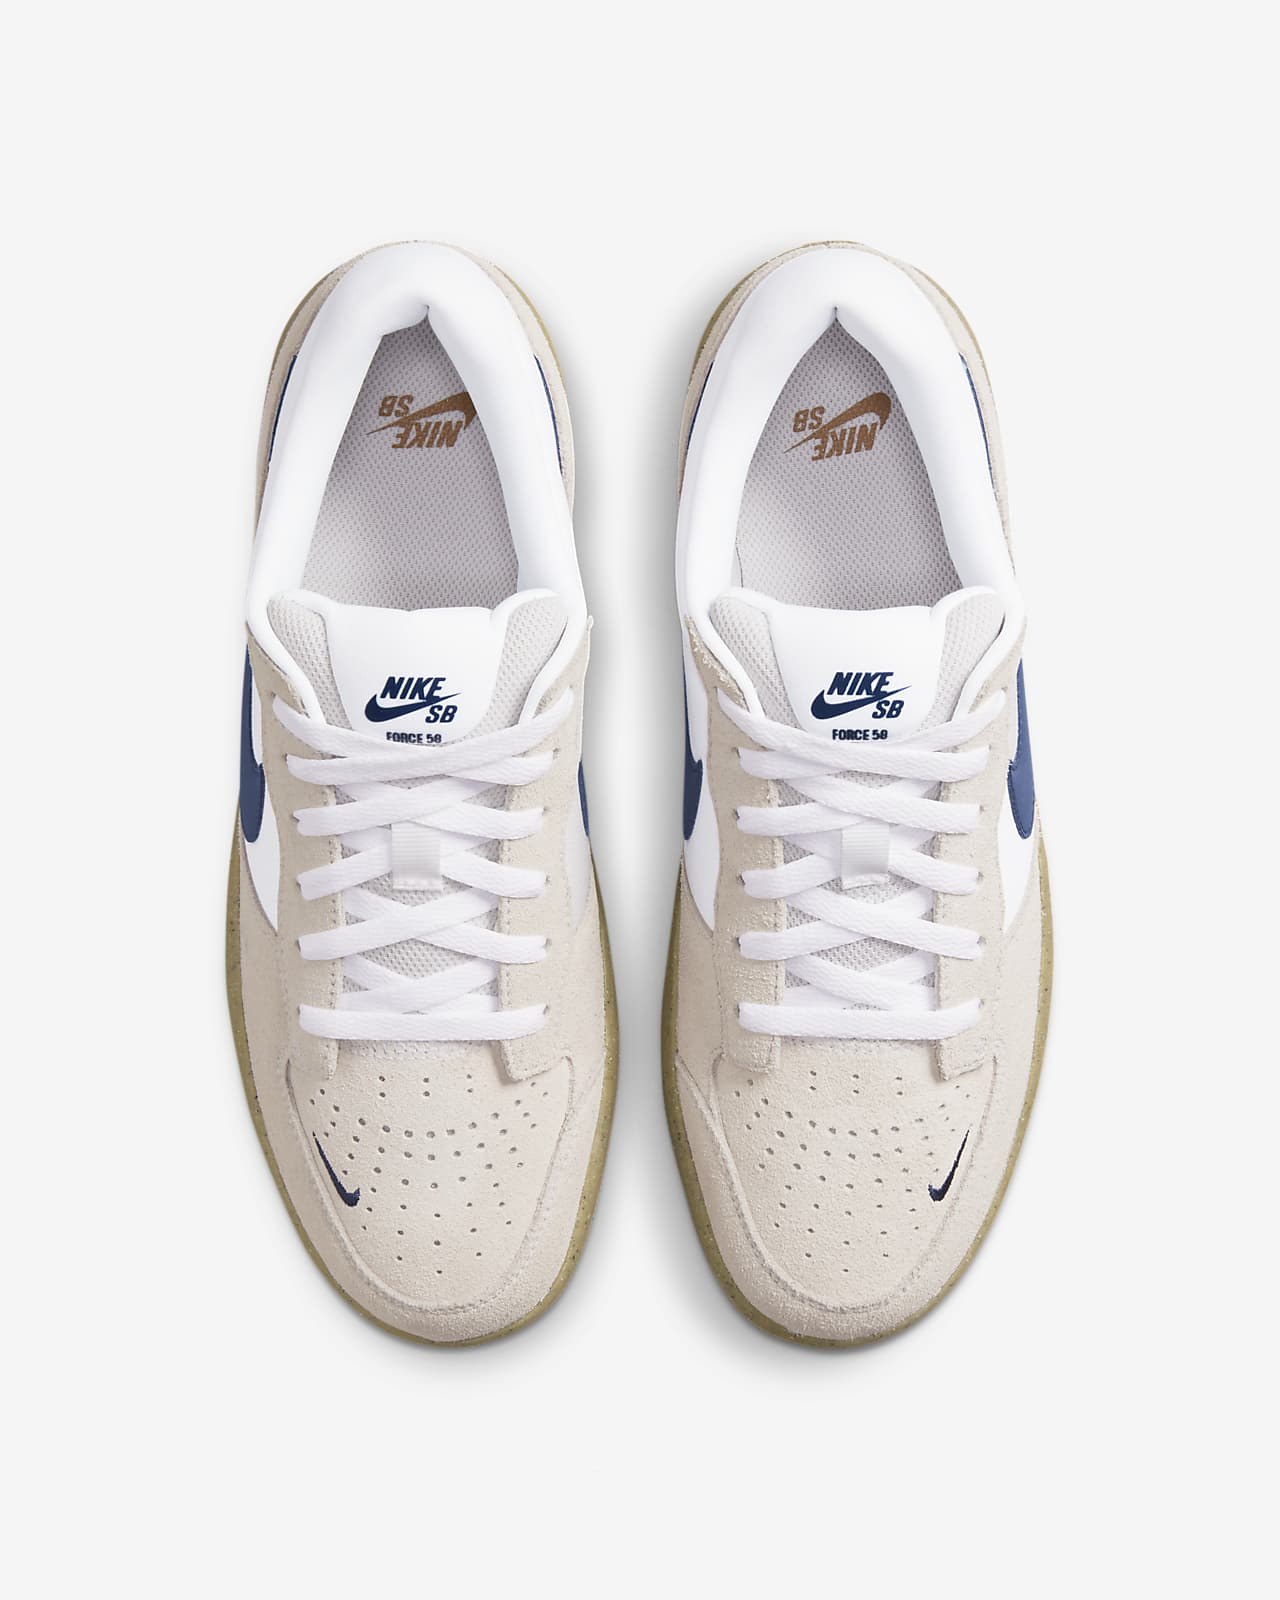 Nike SB Force 58 Skate Shoe. Nike LU